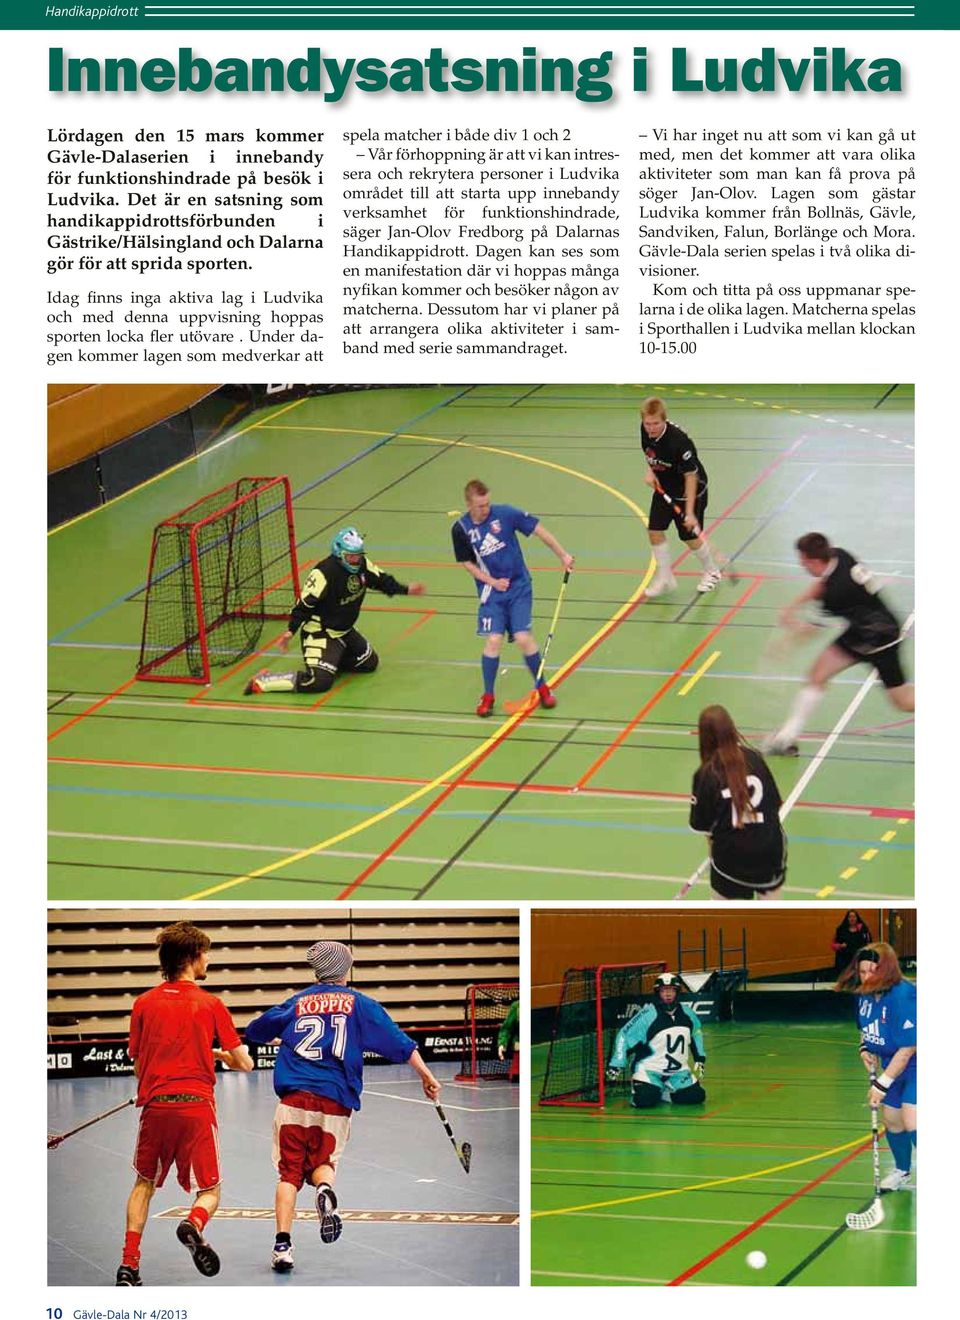 Idag finns inga aktiva lag i Ludvika och med denna uppvisning hoppas sporten locka fler utövare.